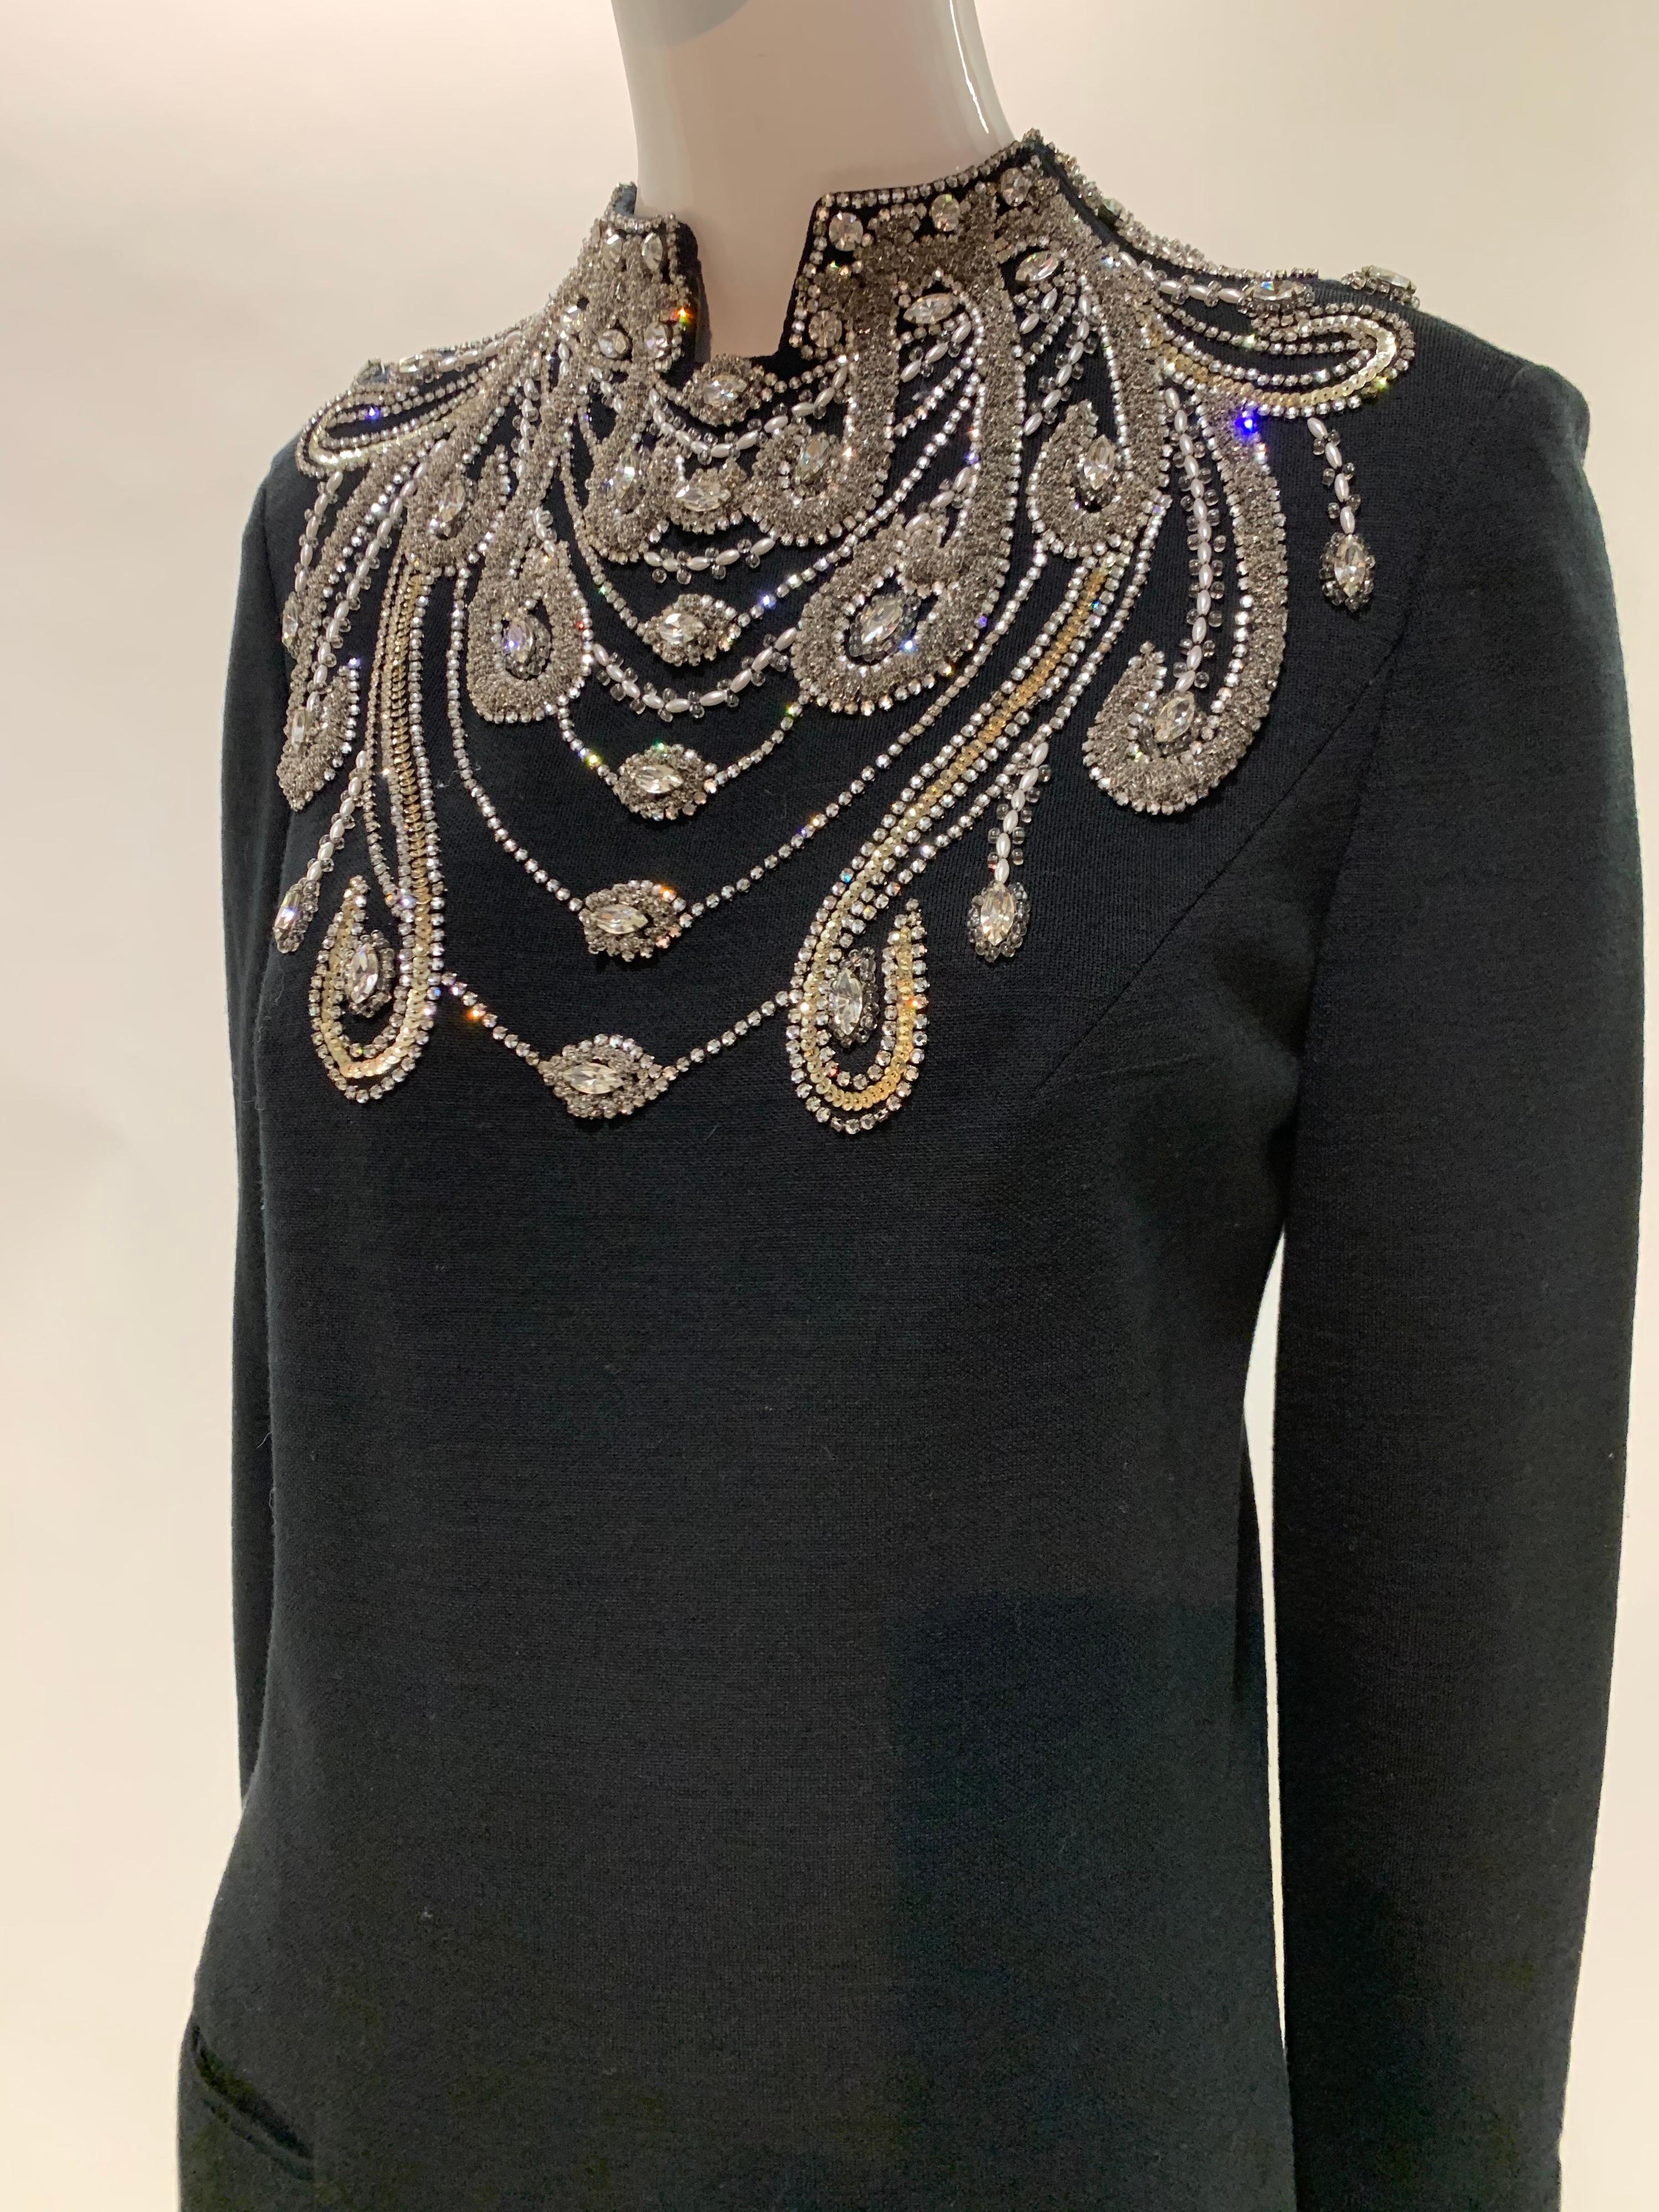 1960 Spektakuläres Mr. Blackwell Custom Rhinestone Jeweled Cocktail Dress. Knielanges Kleid aus schwarzem Wollstrick mit einem wunderschönen Mieder im Jugendstil mit silbernen Strasssteinen, Perlen und Pailletten! Mit langen Ärmeln. Vollständig